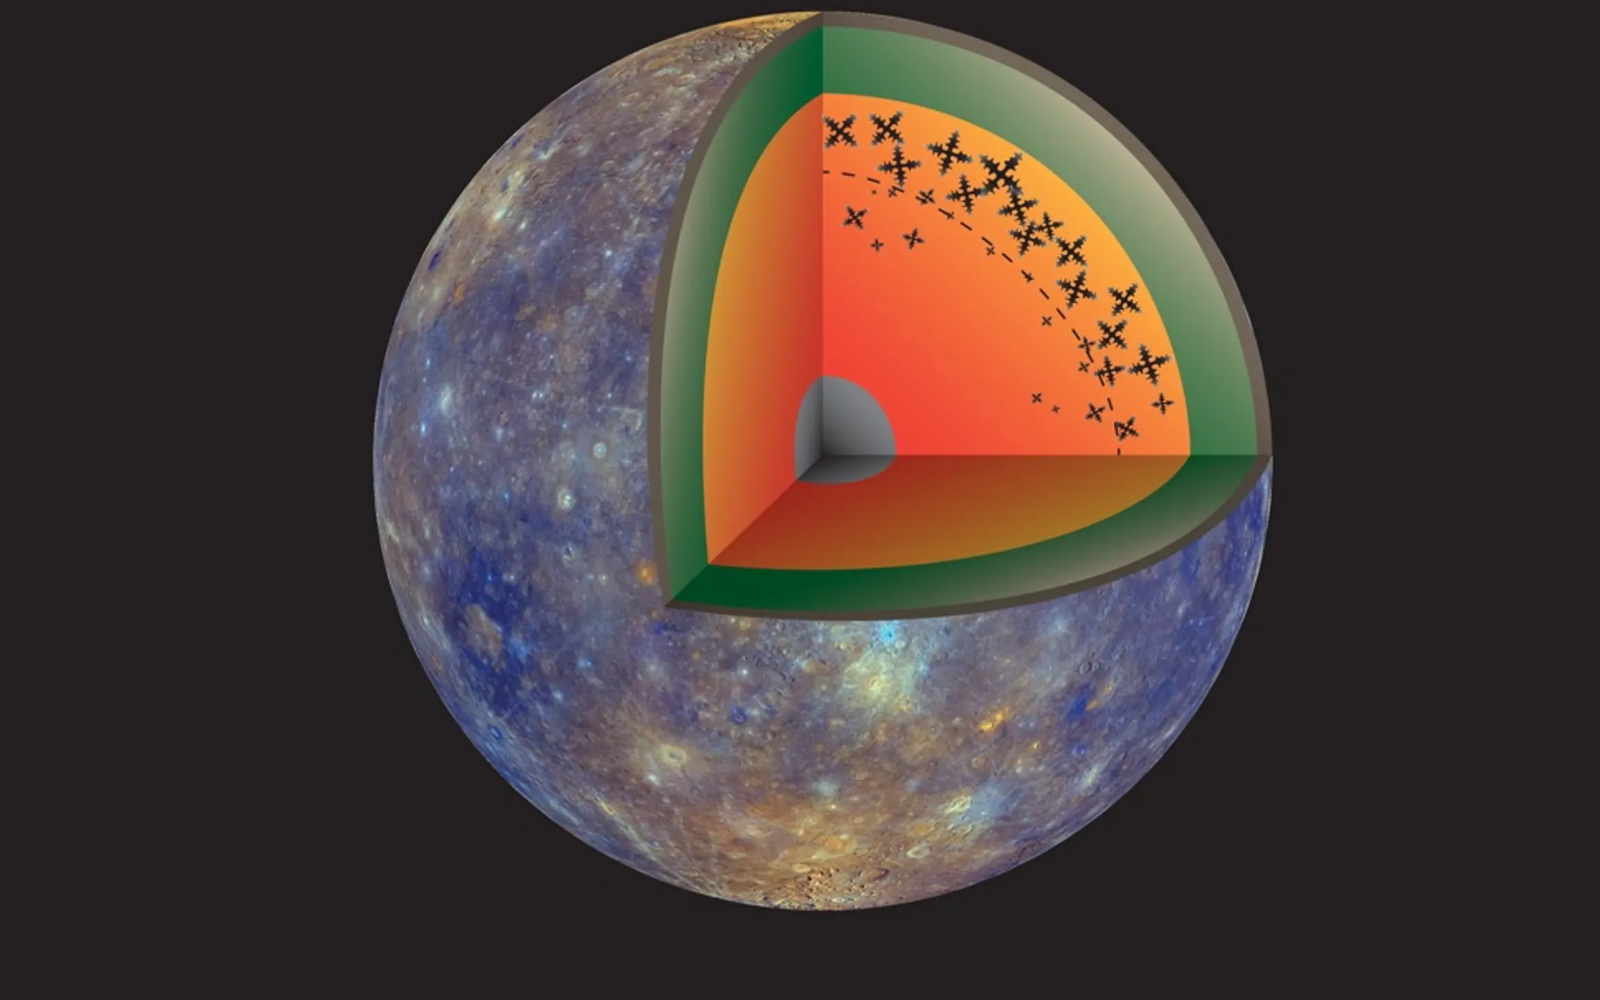 Изображение Меркурия в разрезе, внутри которого виден железный снег.